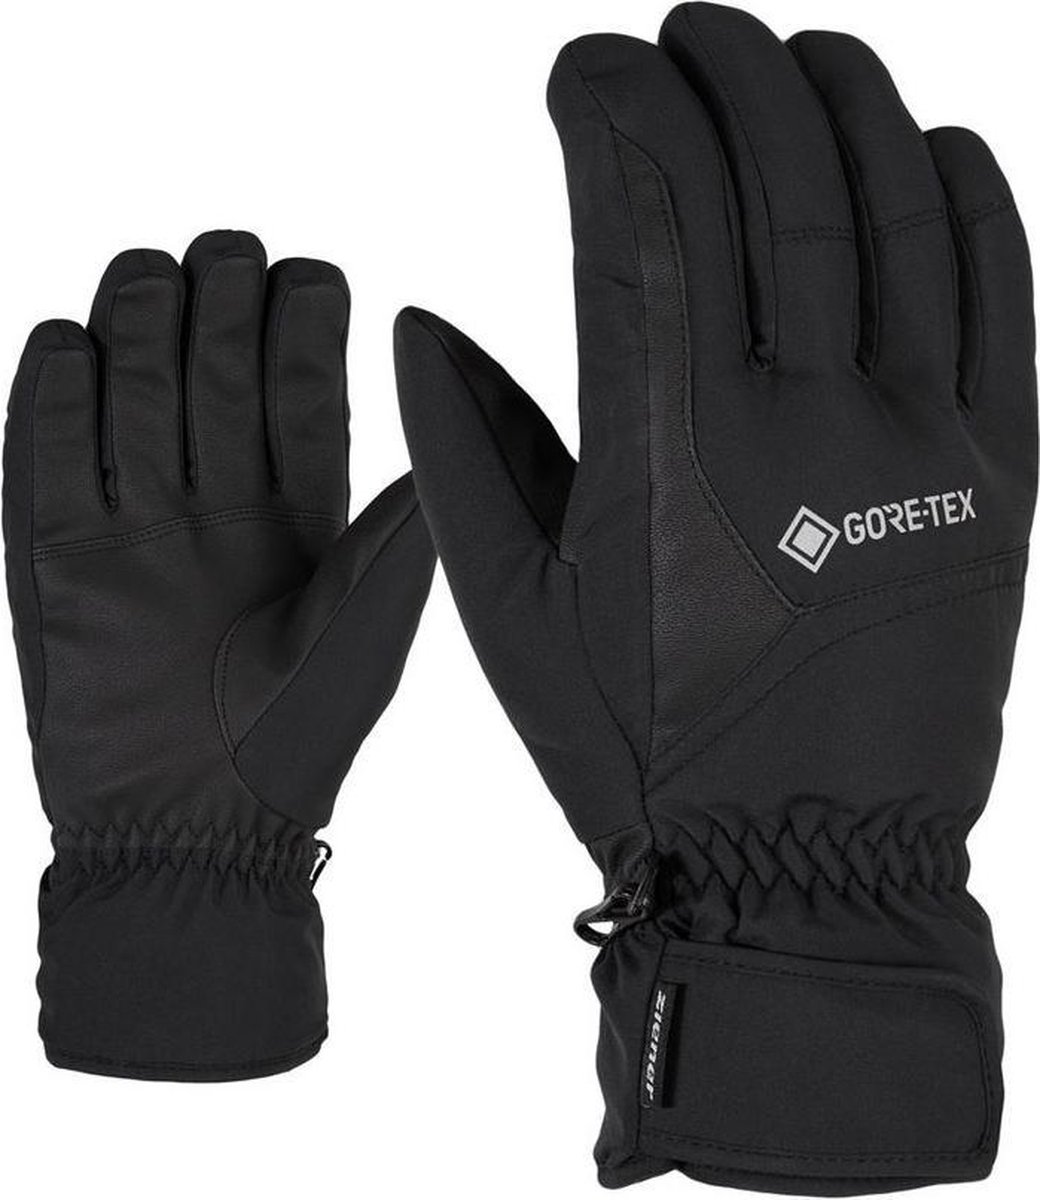 Ziener Garwen GTX - Wintersporthandschoen Voor Heren - Goretex - Zwart - 10.5